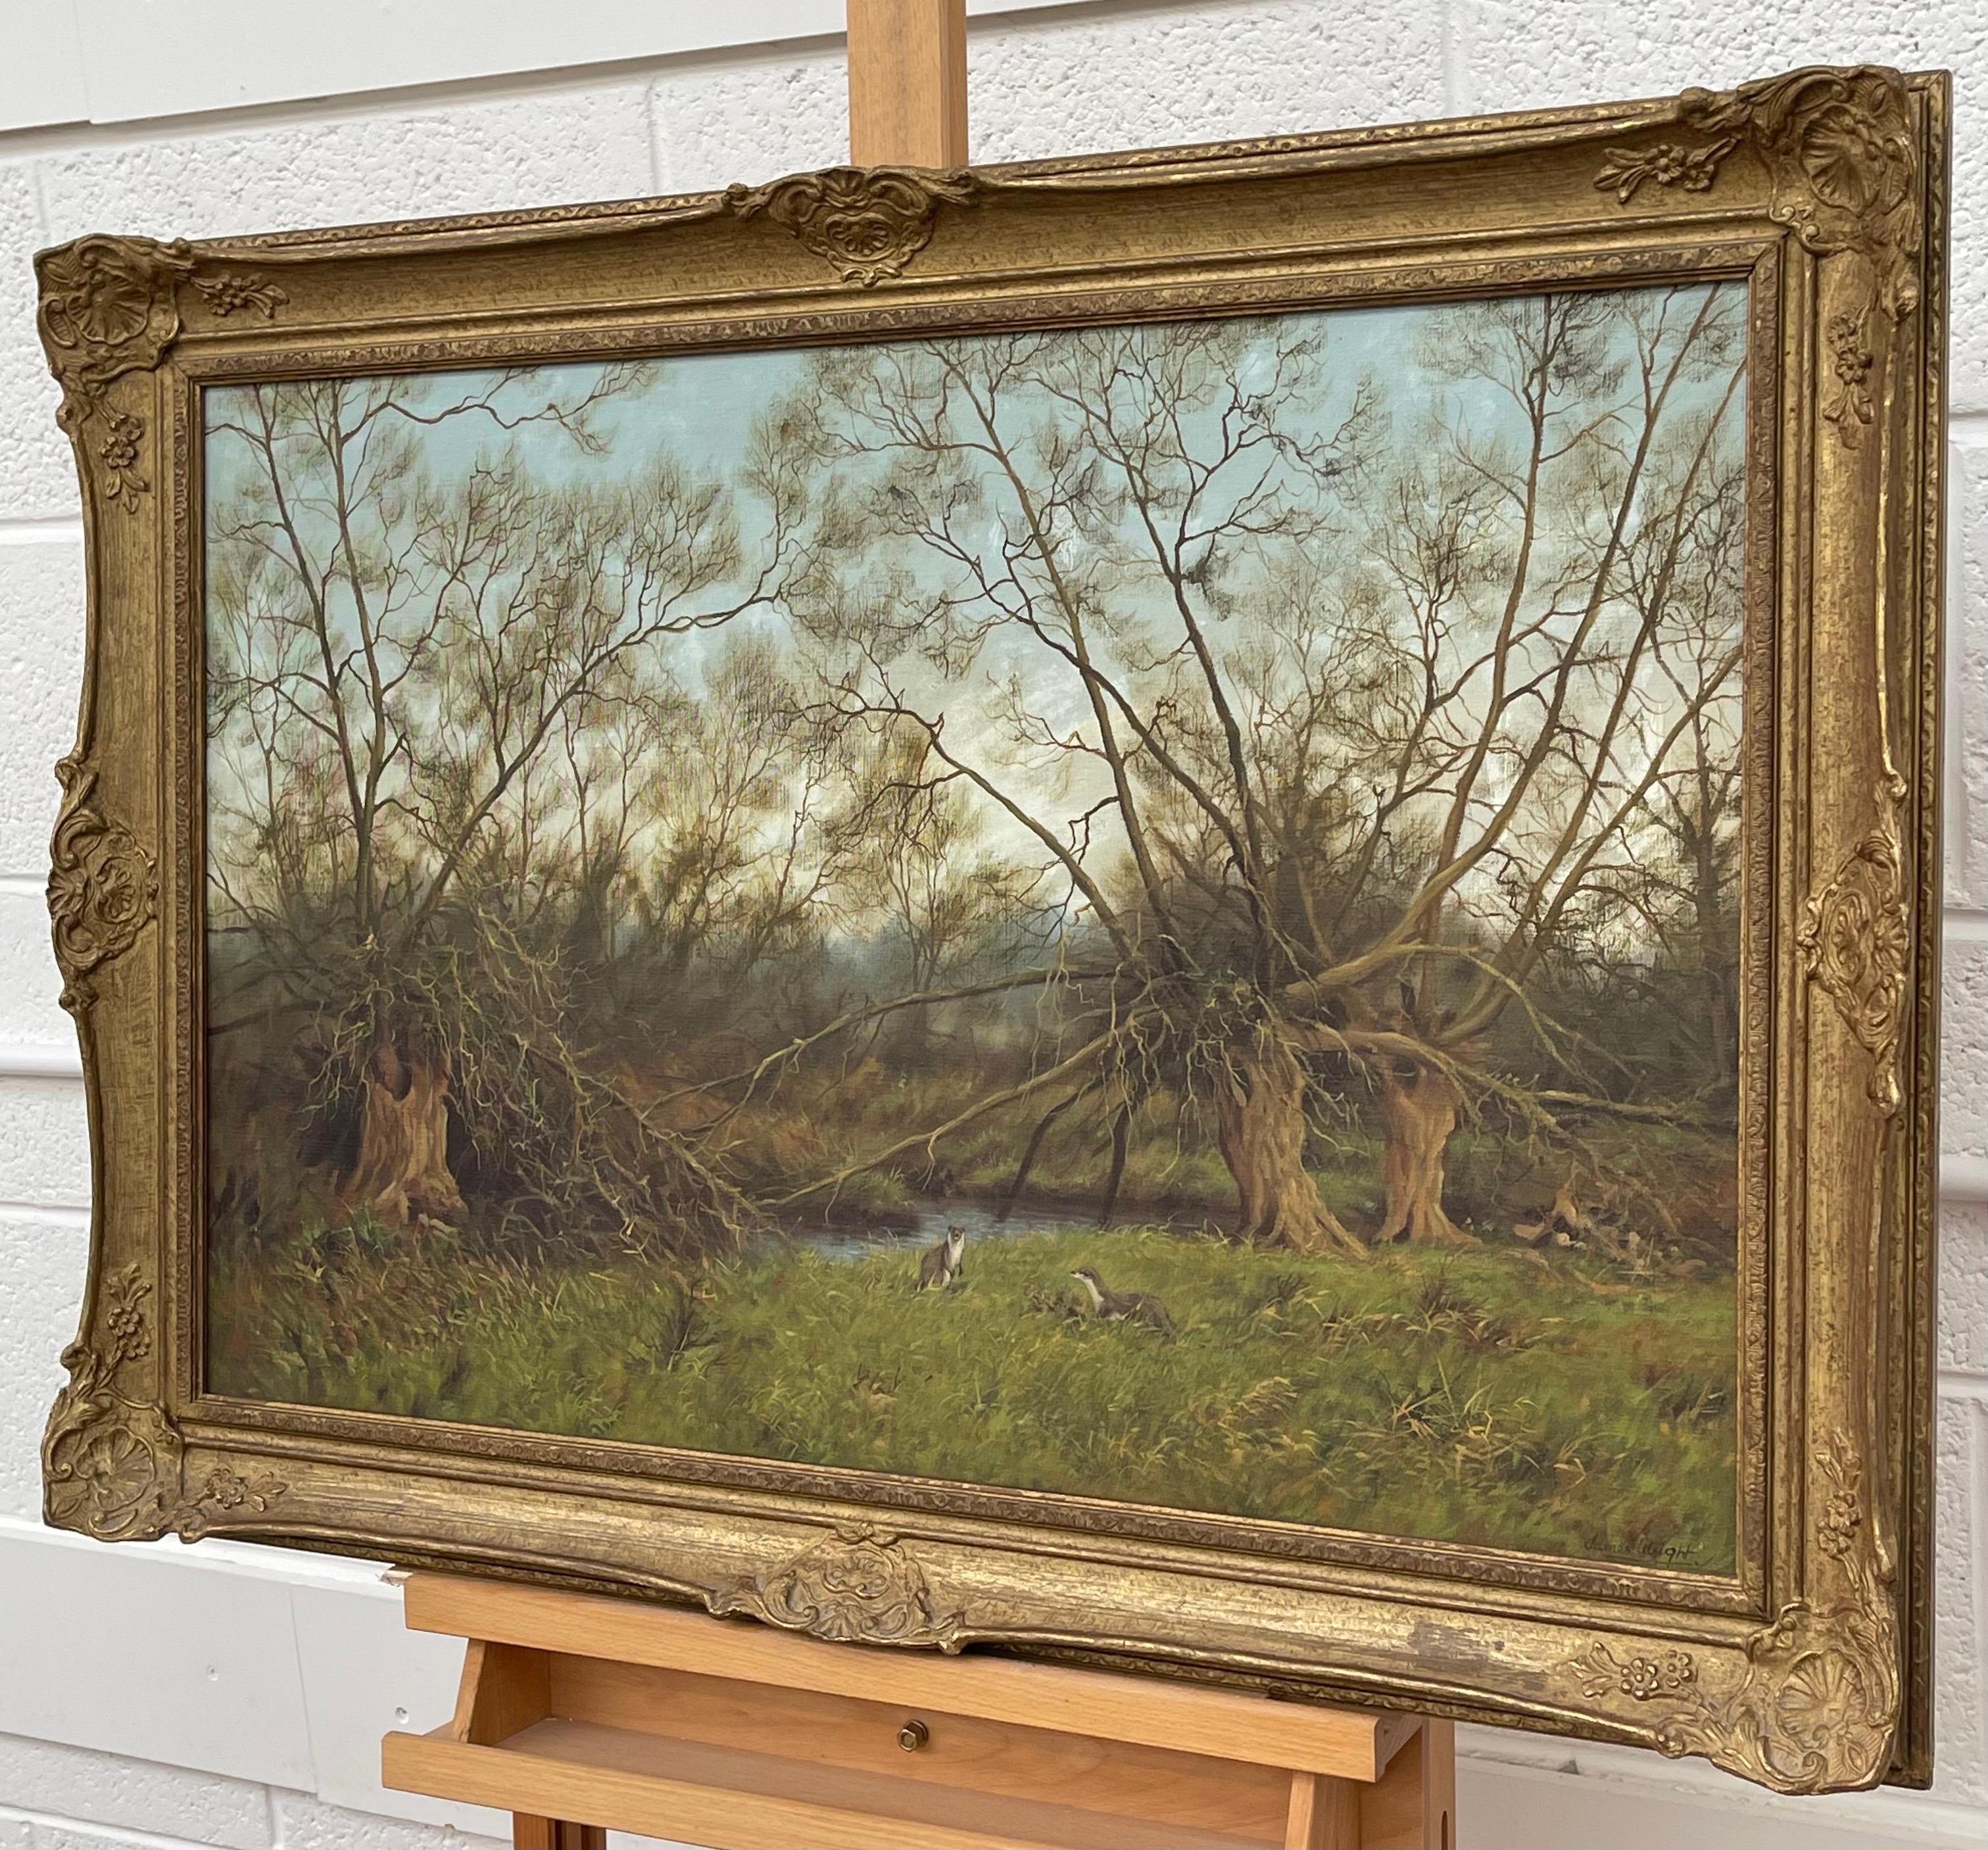 Gemälde der englischen Landschaft mit Flussottern von Modern British artist (Braun), Landscape Painting, von James Wright